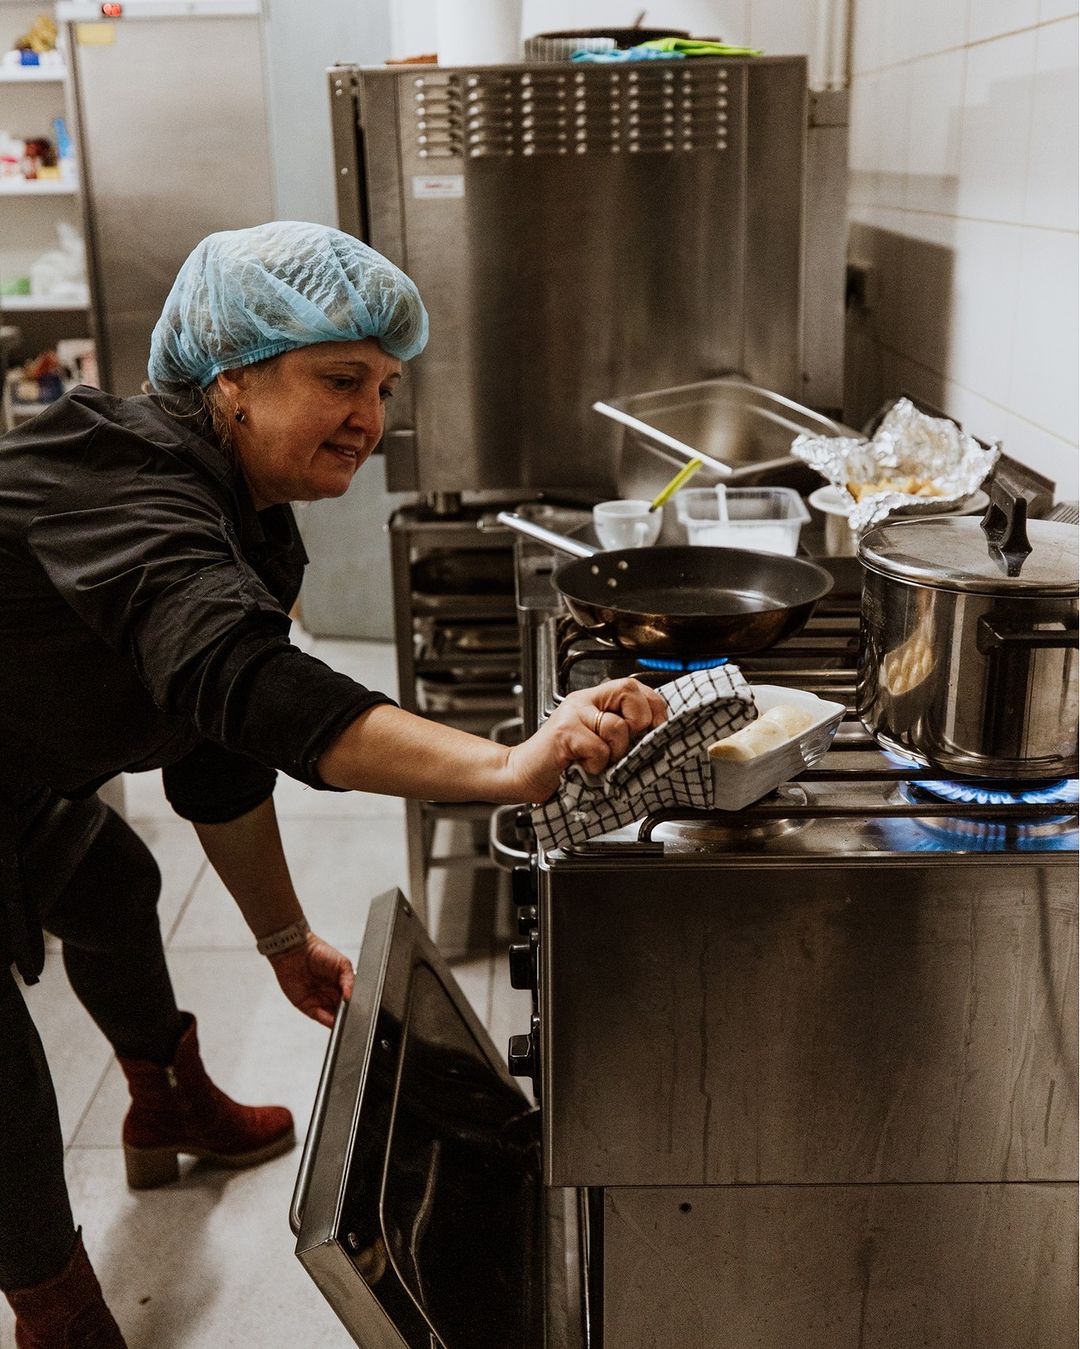 У женщин-повара нет специального образования, но есть желание работать. Фото: instagram.com/cieplokrakow/